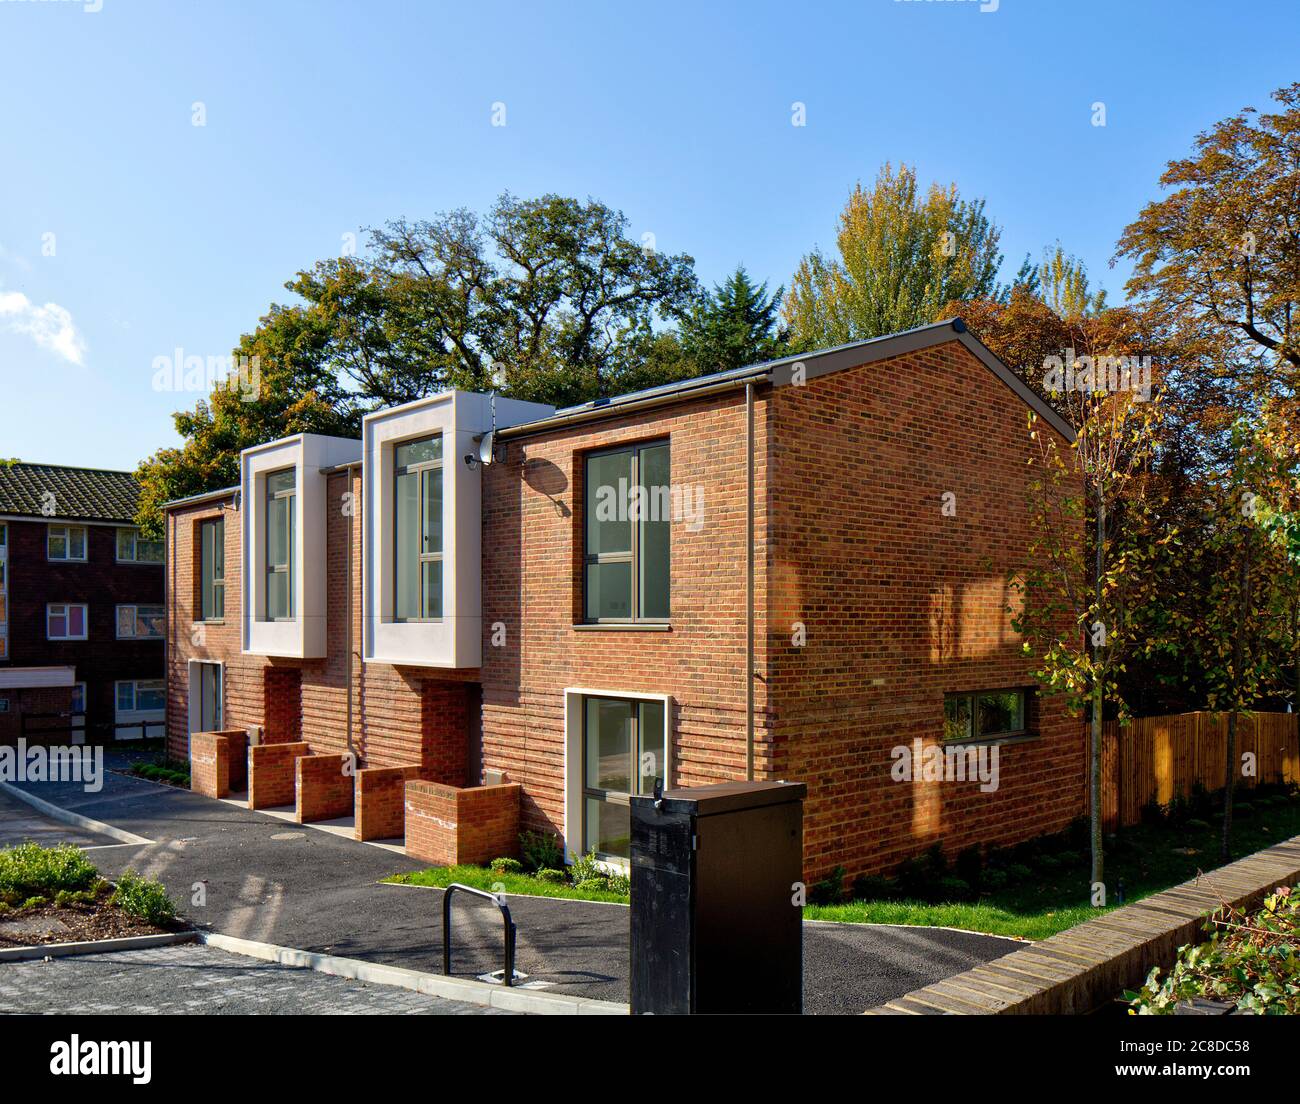 Außenansicht. Ravensdale & Rushden Housing Scheme, Upper Norwood, Großbritannien. Architekt: HTA Design llp, 2020. Stockfoto